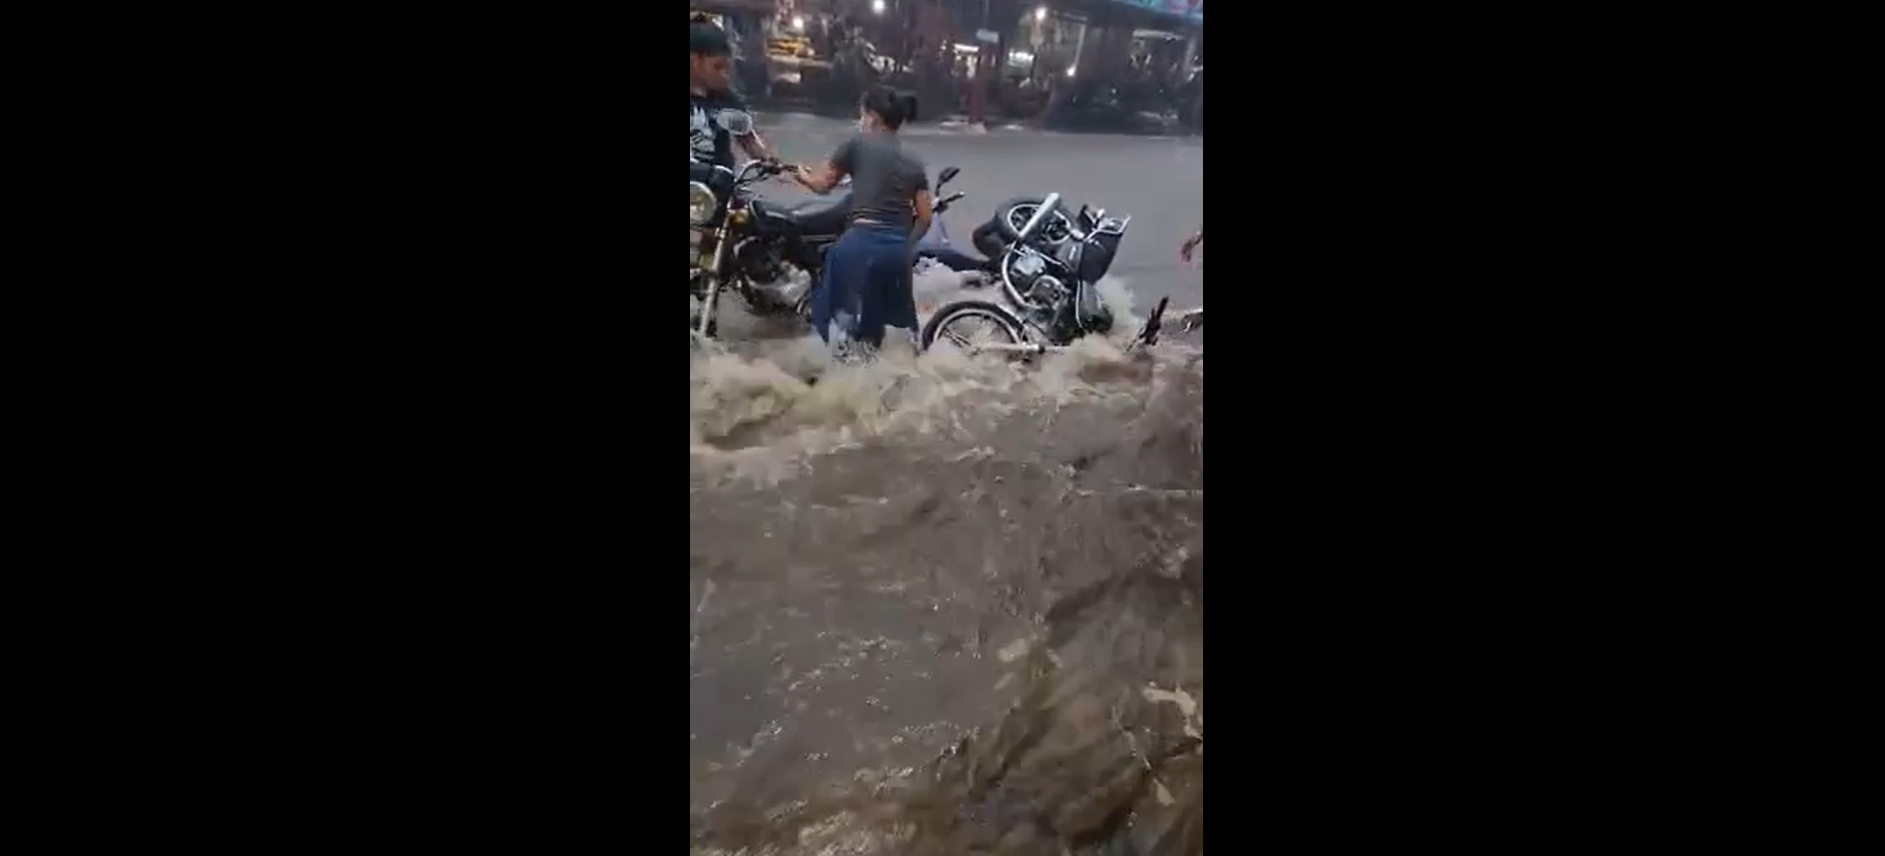 El desbordamiento del río Sis ha causado daños en Suchitepéquez. (Foto Prensa Libre: Facebook RadarGT)